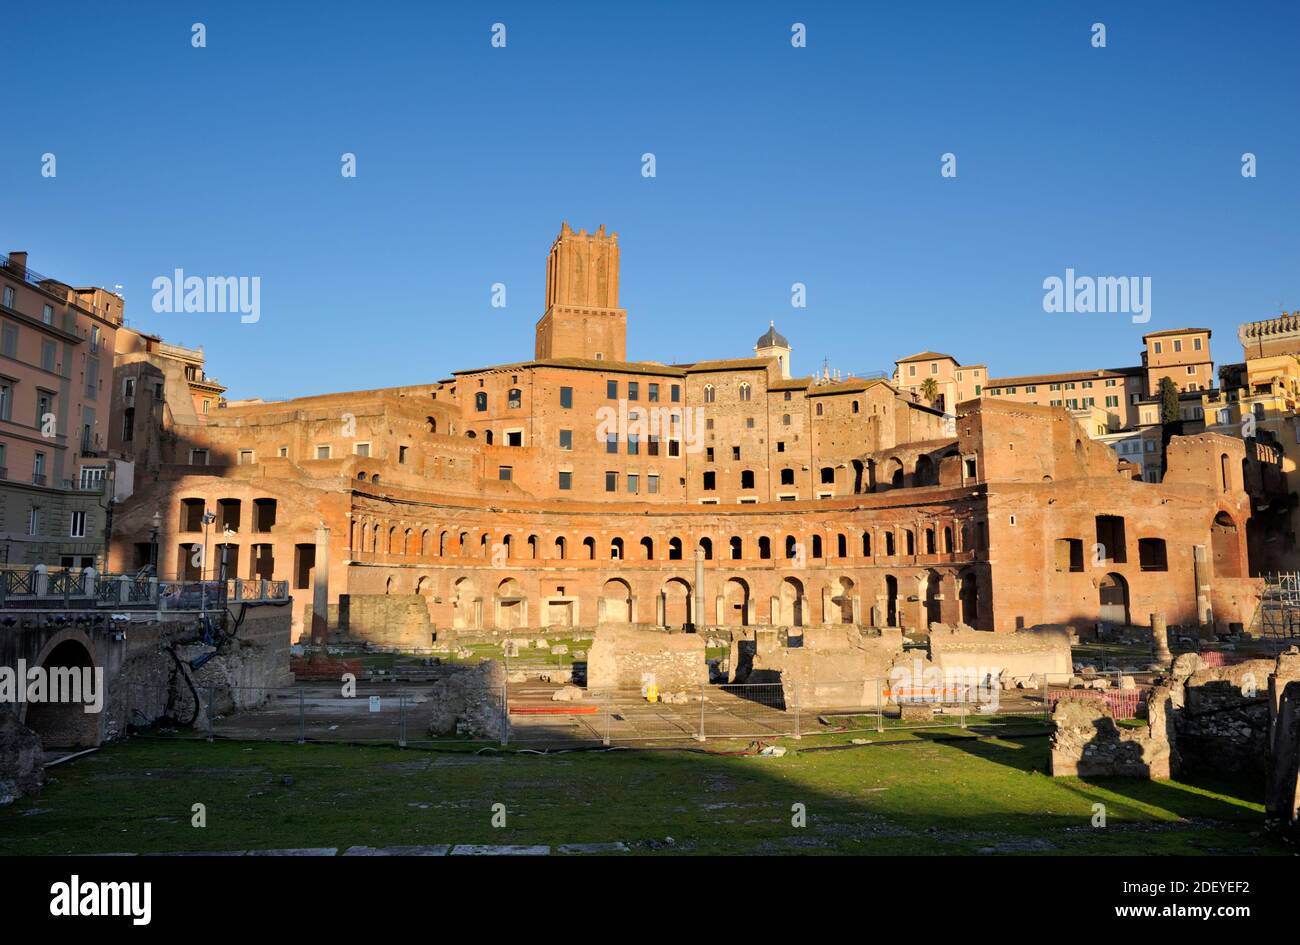 Trajan's Forum and market, Rome, Italy Stock Photo